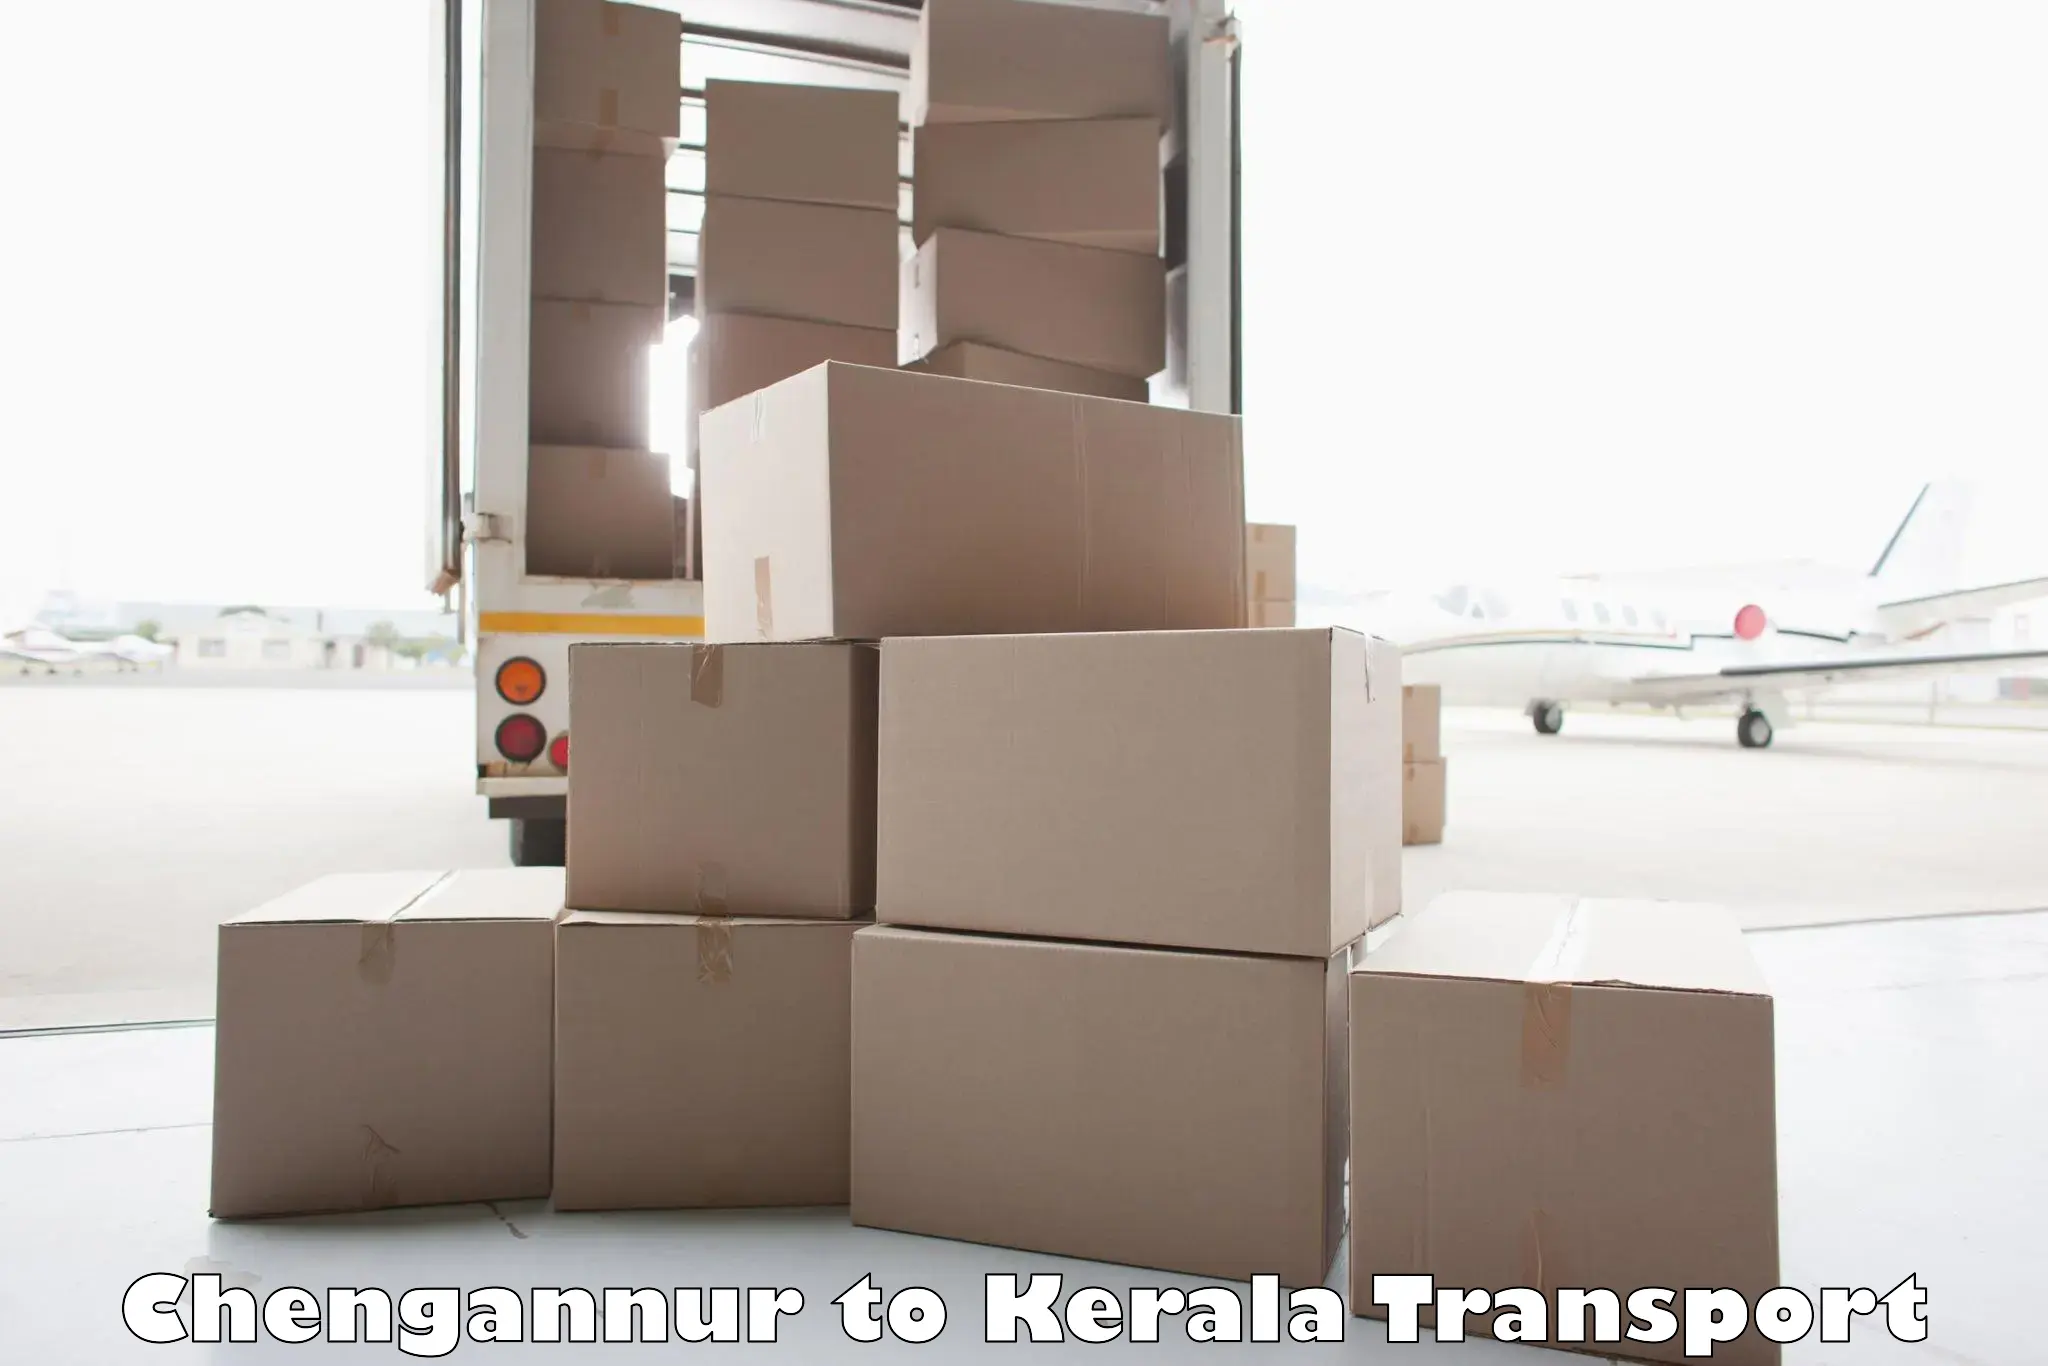 Cargo train transport services Chengannur to Karukachal